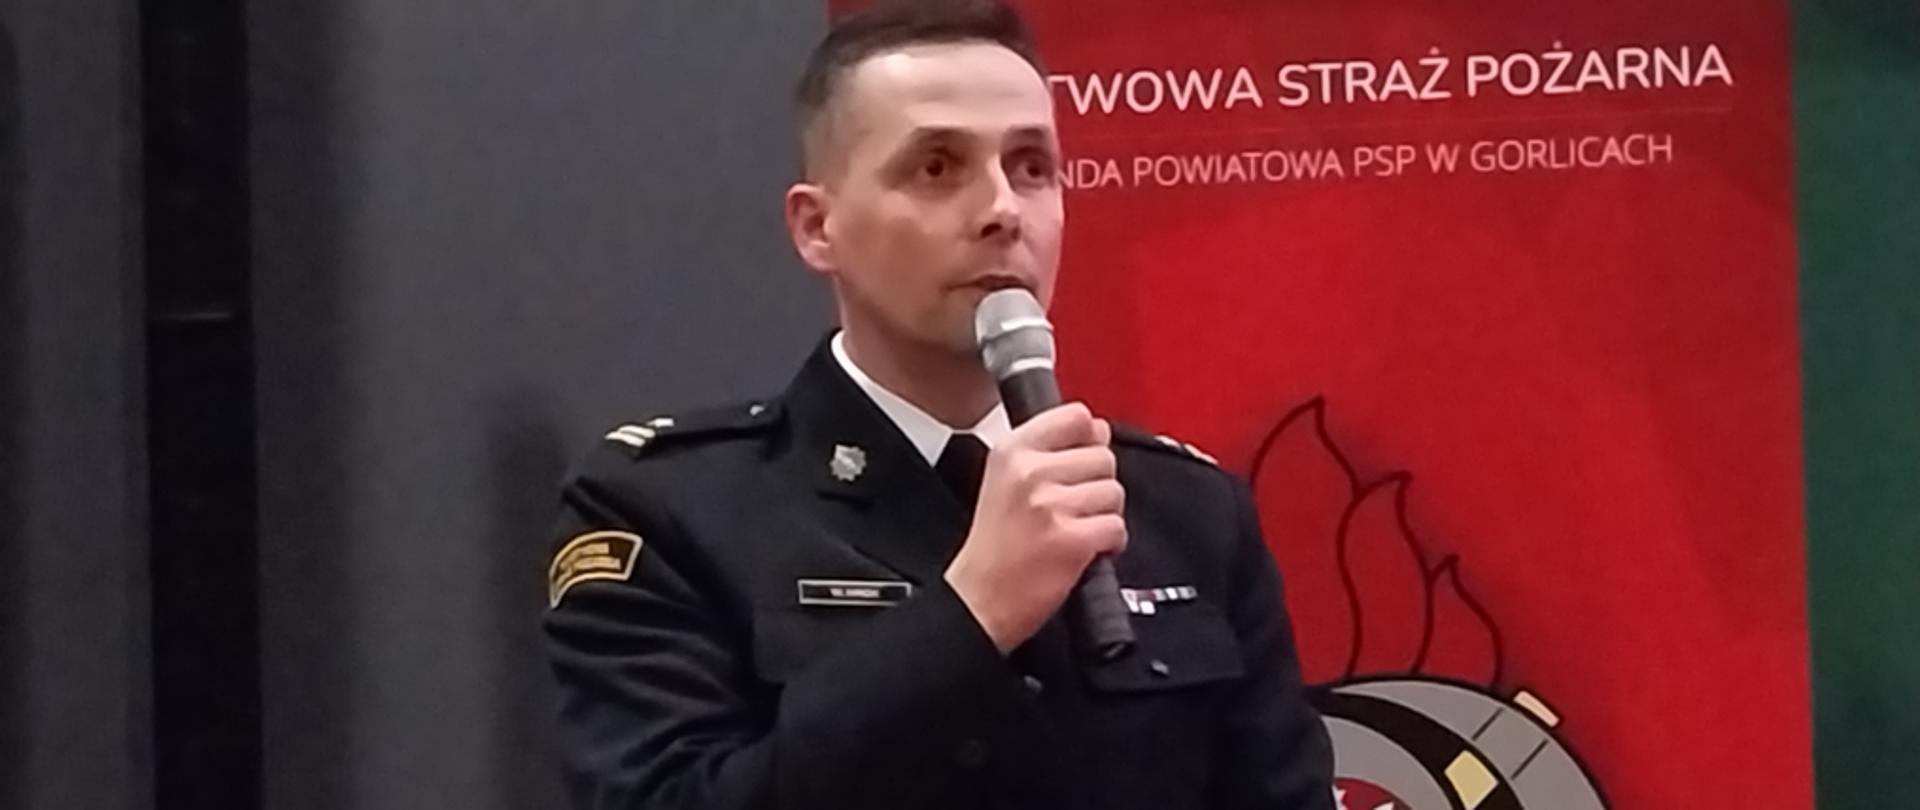 Zajęcie przedstawia przemawiającego z mikrofonem komendanta powiatowego Państwowej Straży Pożarnej w Gorlicach podczas narady rocznej podsumowującej działalność Komendy Powiatowej Państwowej Straży Pożarnej w Gorlicach.